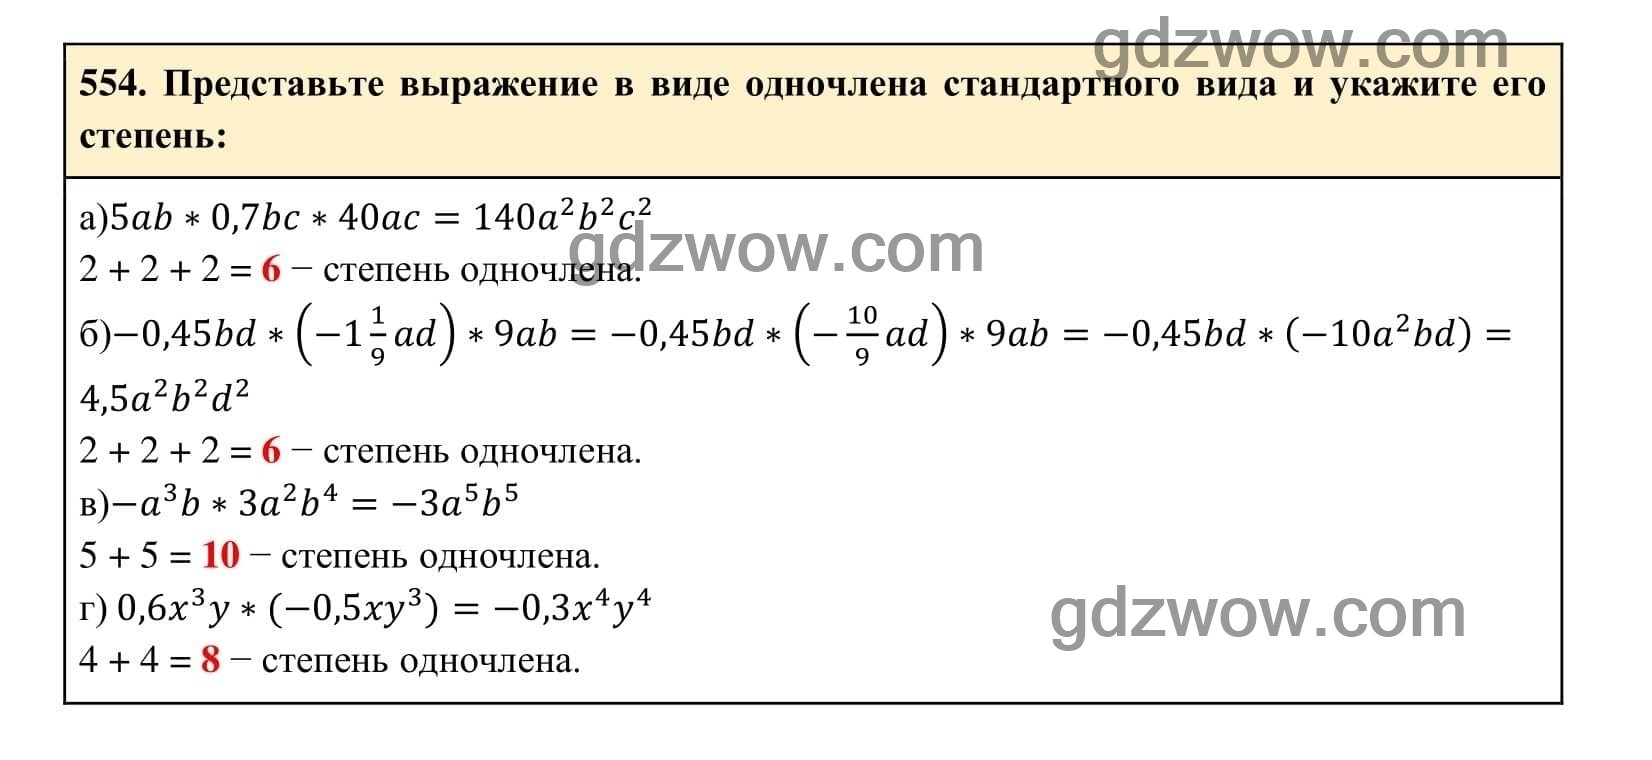 Упражнение 554 - ГДЗ по Алгебре 7 класс Учебник Макарычев (решебник) - GDZwow